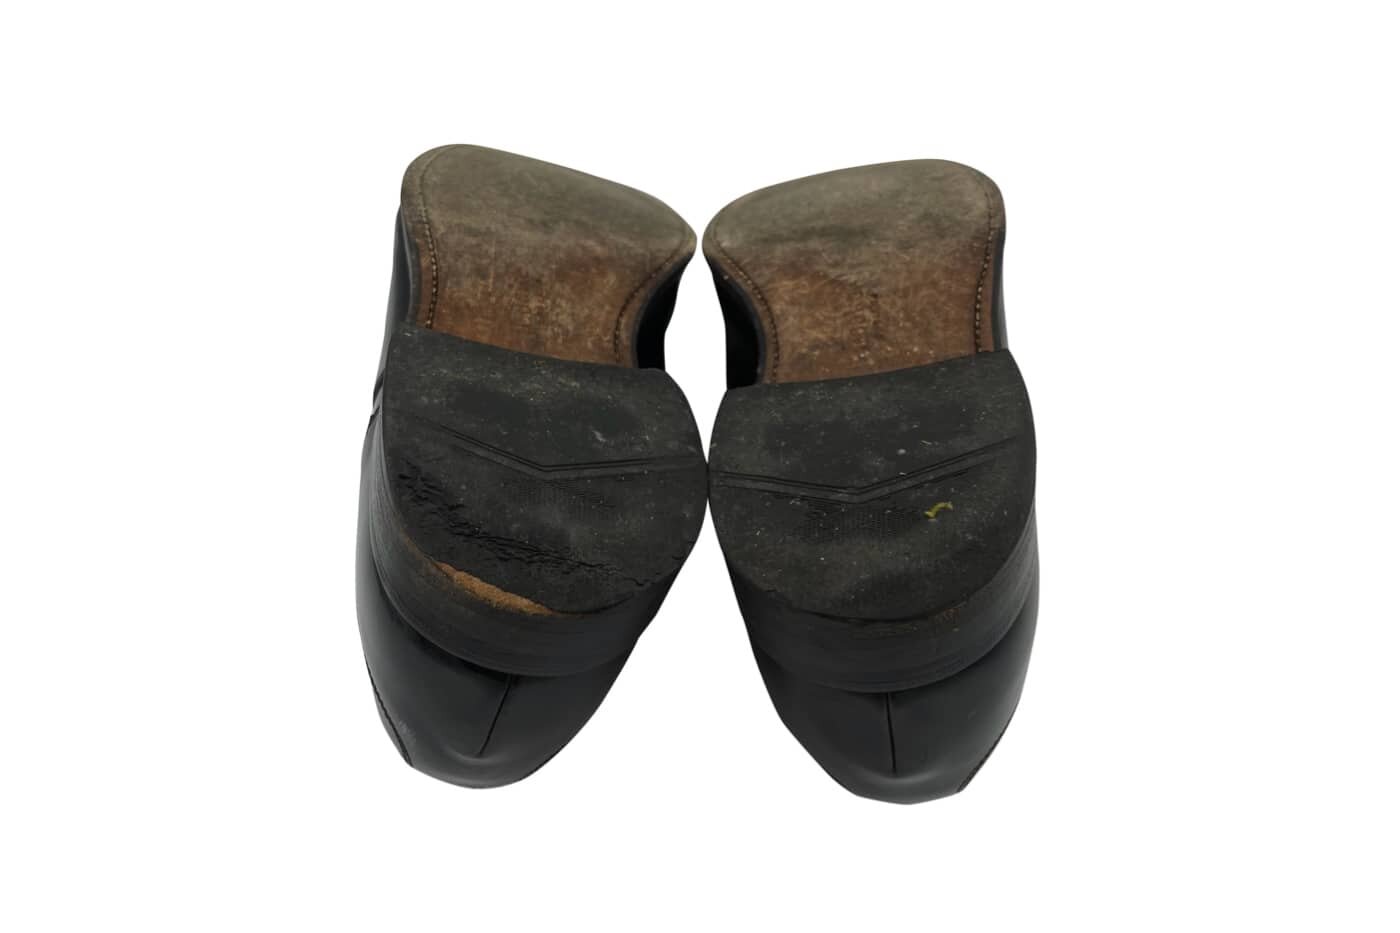 cobbler Shoe repair